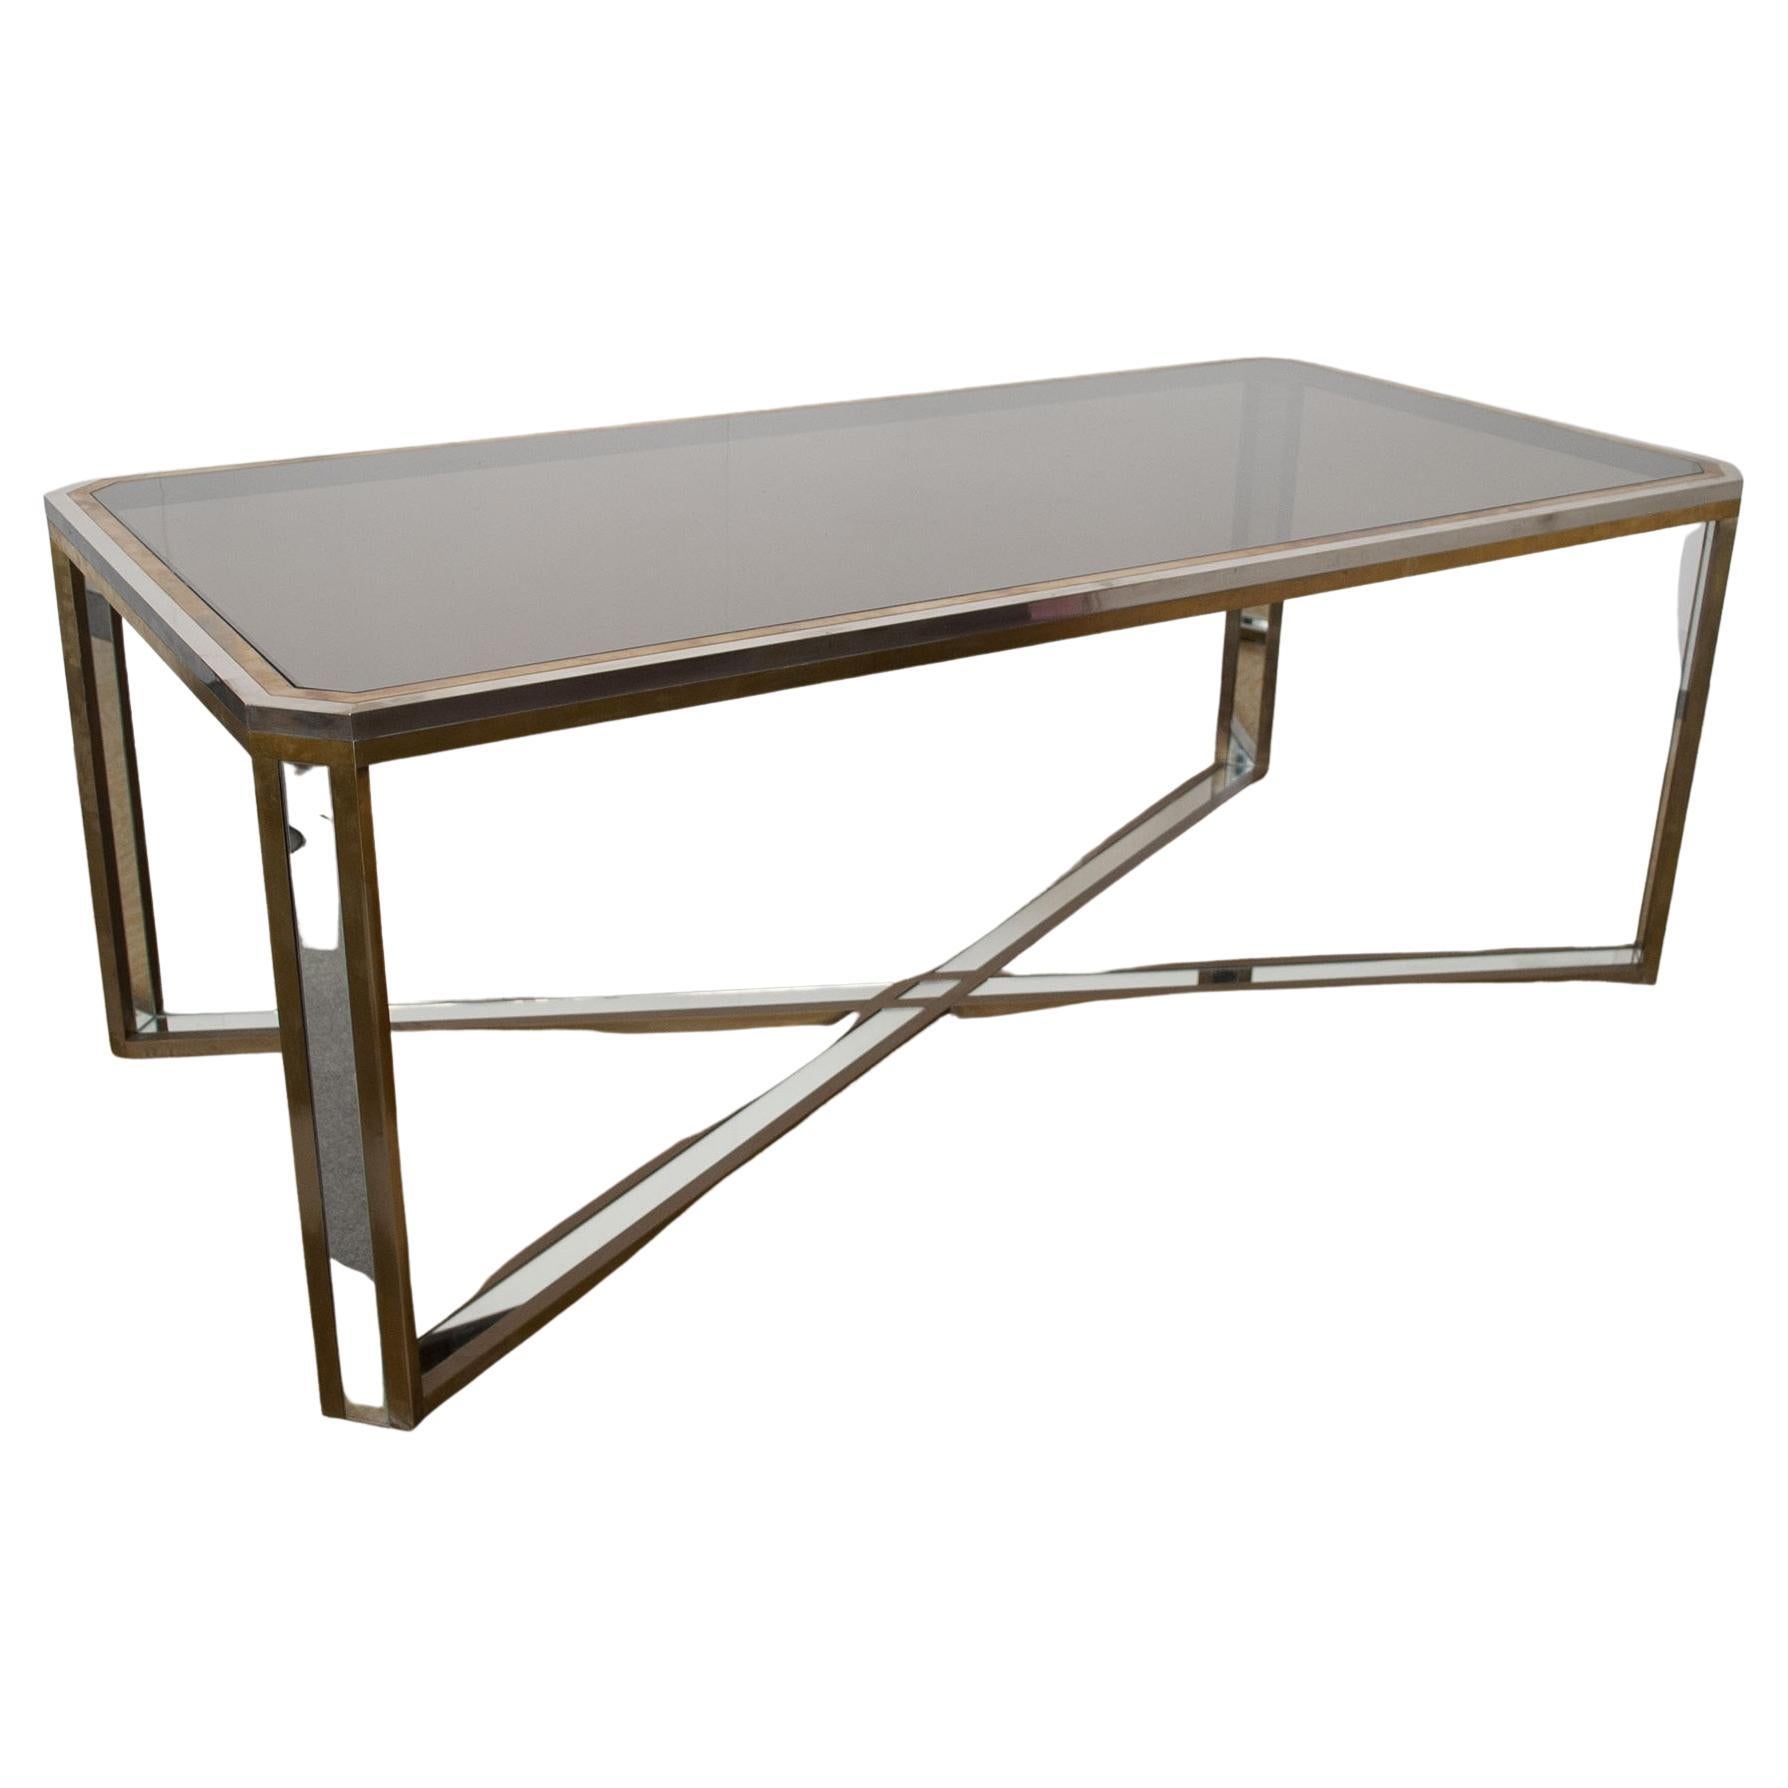 Cette table spectaculaire, conçue par Romeo Rega, est faite d'acier, de laiton et de verre réfléchissant.

Les meubles de la Rega se caractérisent par des formes géométriques et des formes réduites. Ses créations sont presque toujours dorées,